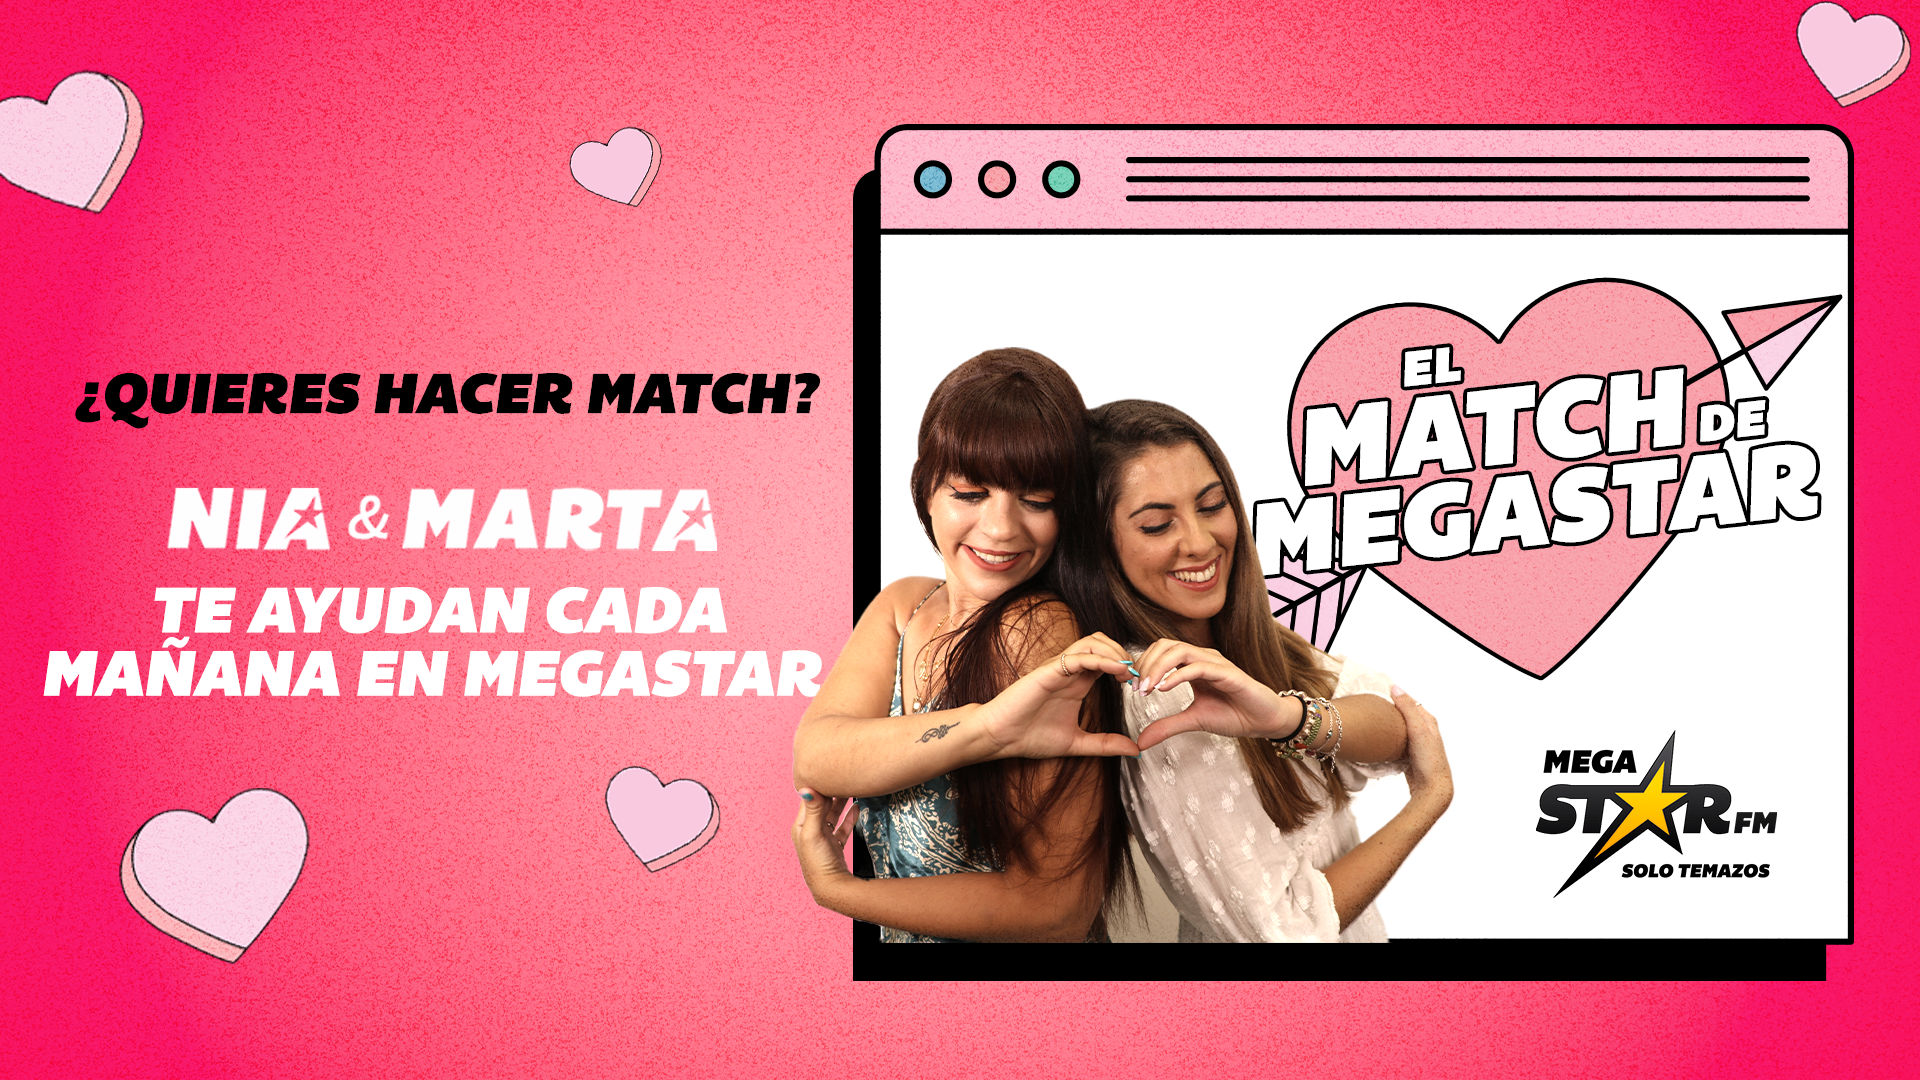 ¡Qué bonito! El buen rollo entre John y Marina hace que triunfen en el 'El Match de Megastar'